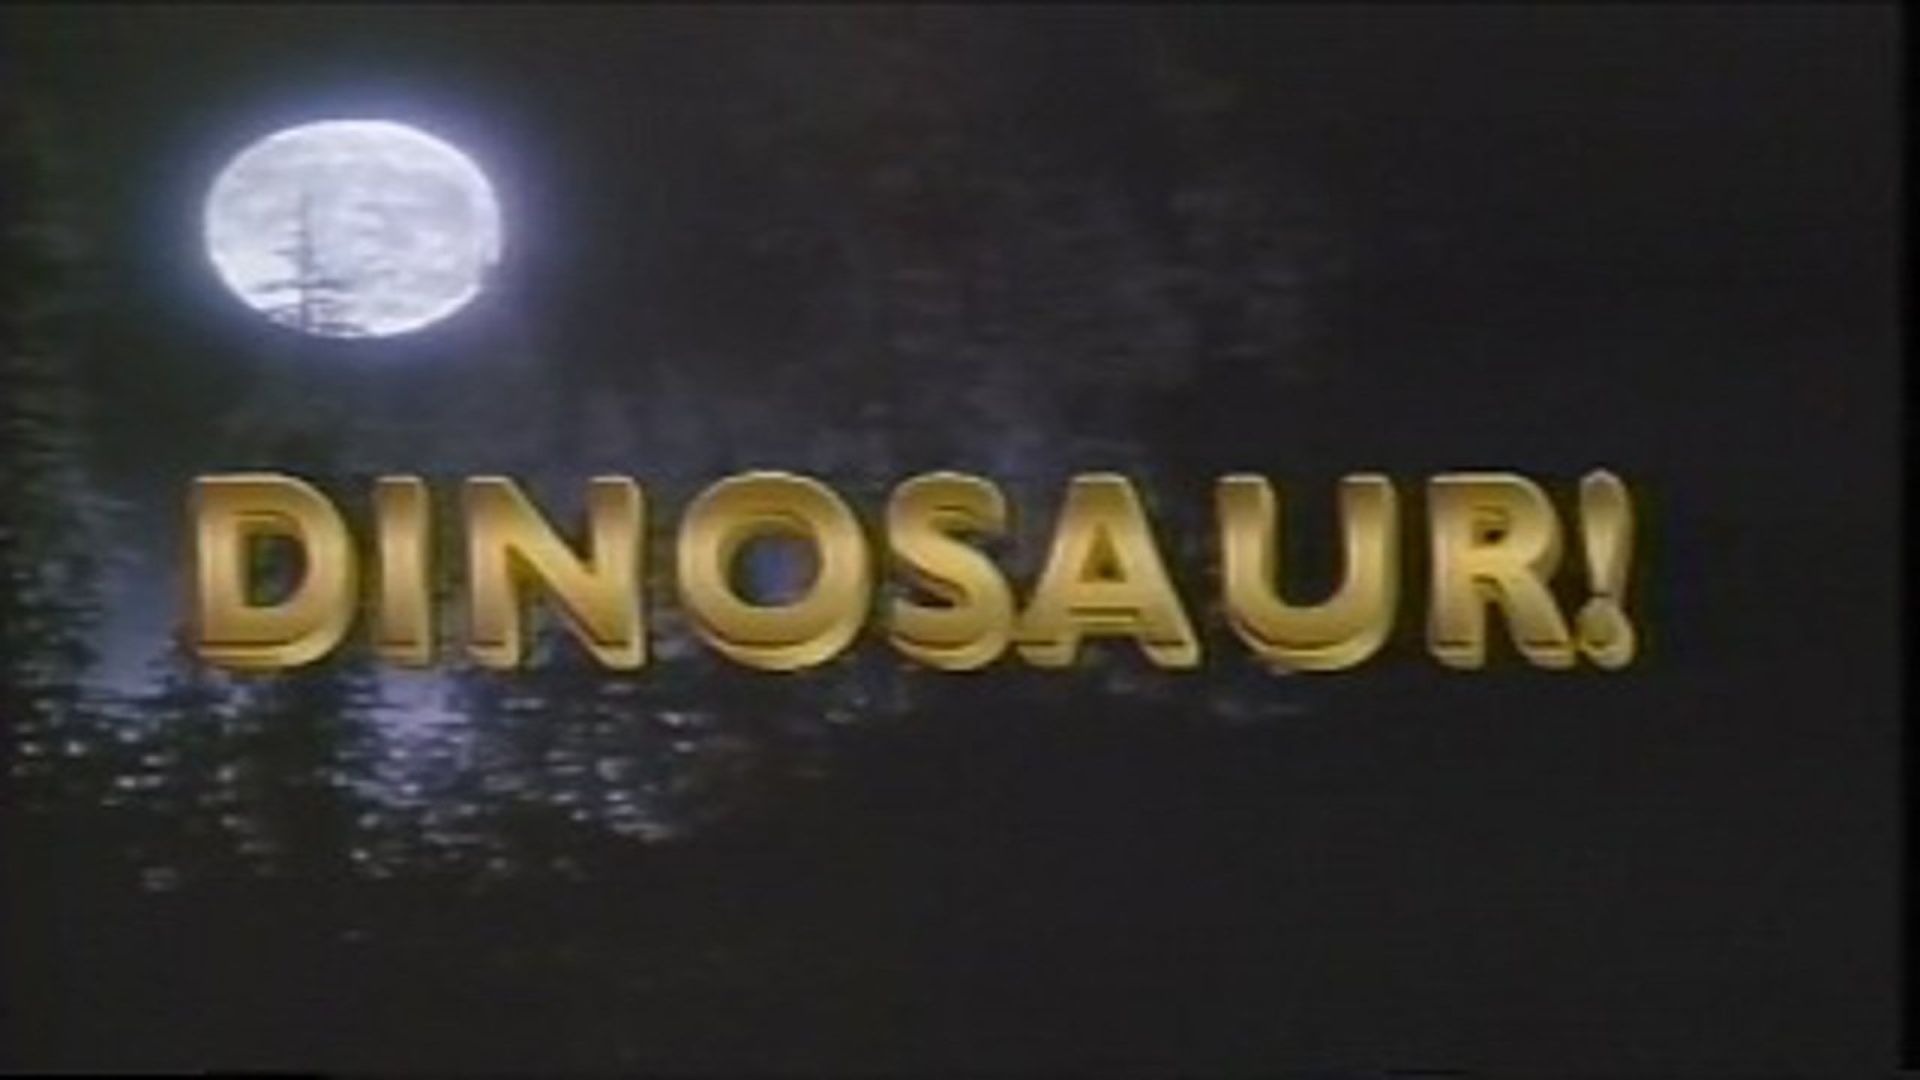 Dinosaur! Backdrop